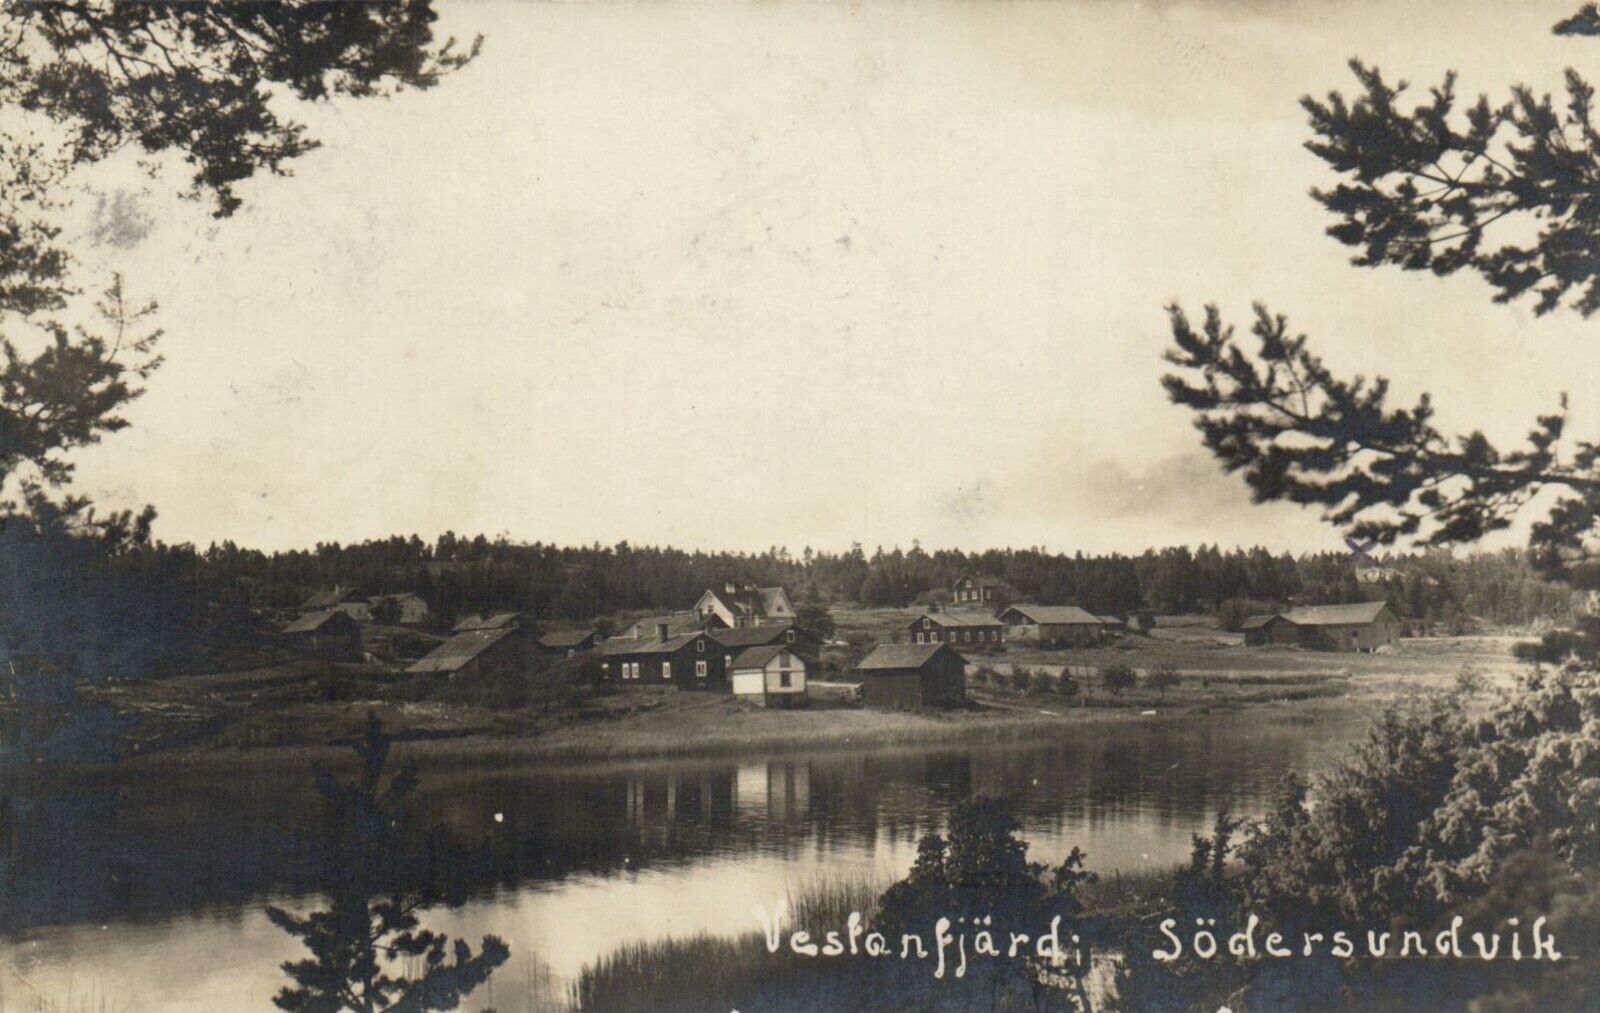 PC FINLAND VESTANFJARD SODERSUNDVIK, Vintage Postcard (b55660)